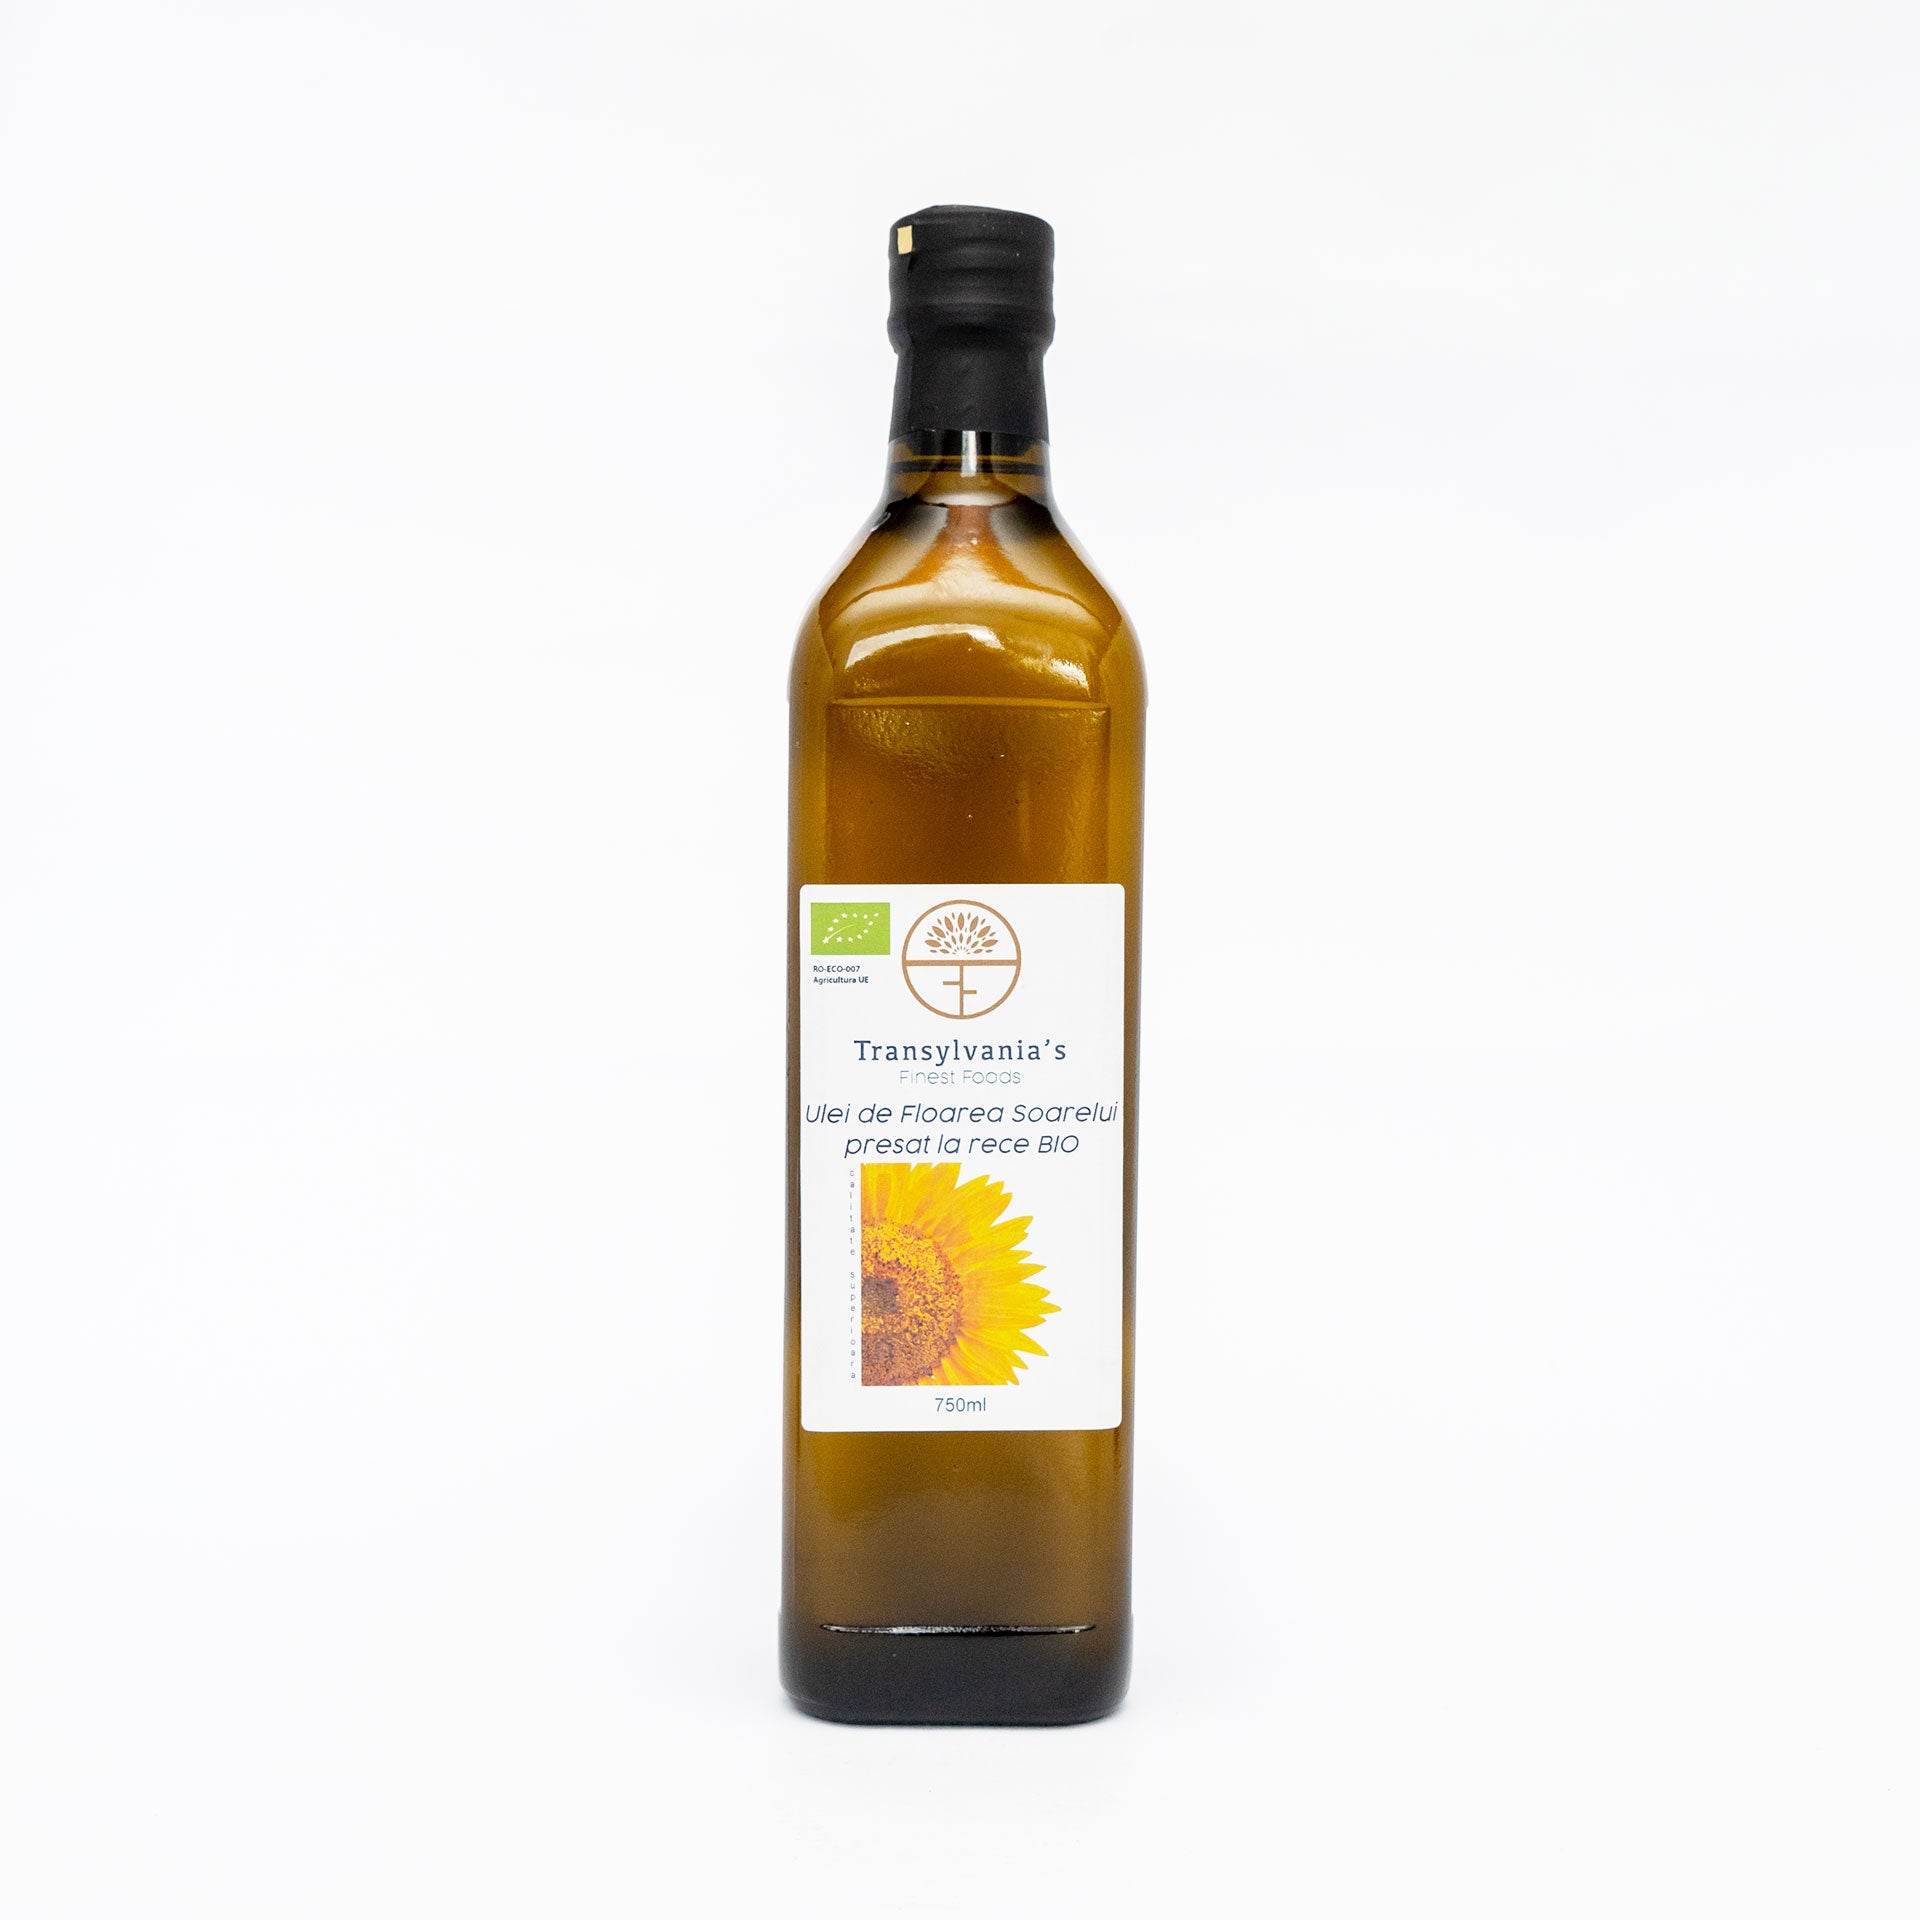 Ulei de floarea soarelui presat la rece BIO, 750ml, Transylvania's Finest Foods